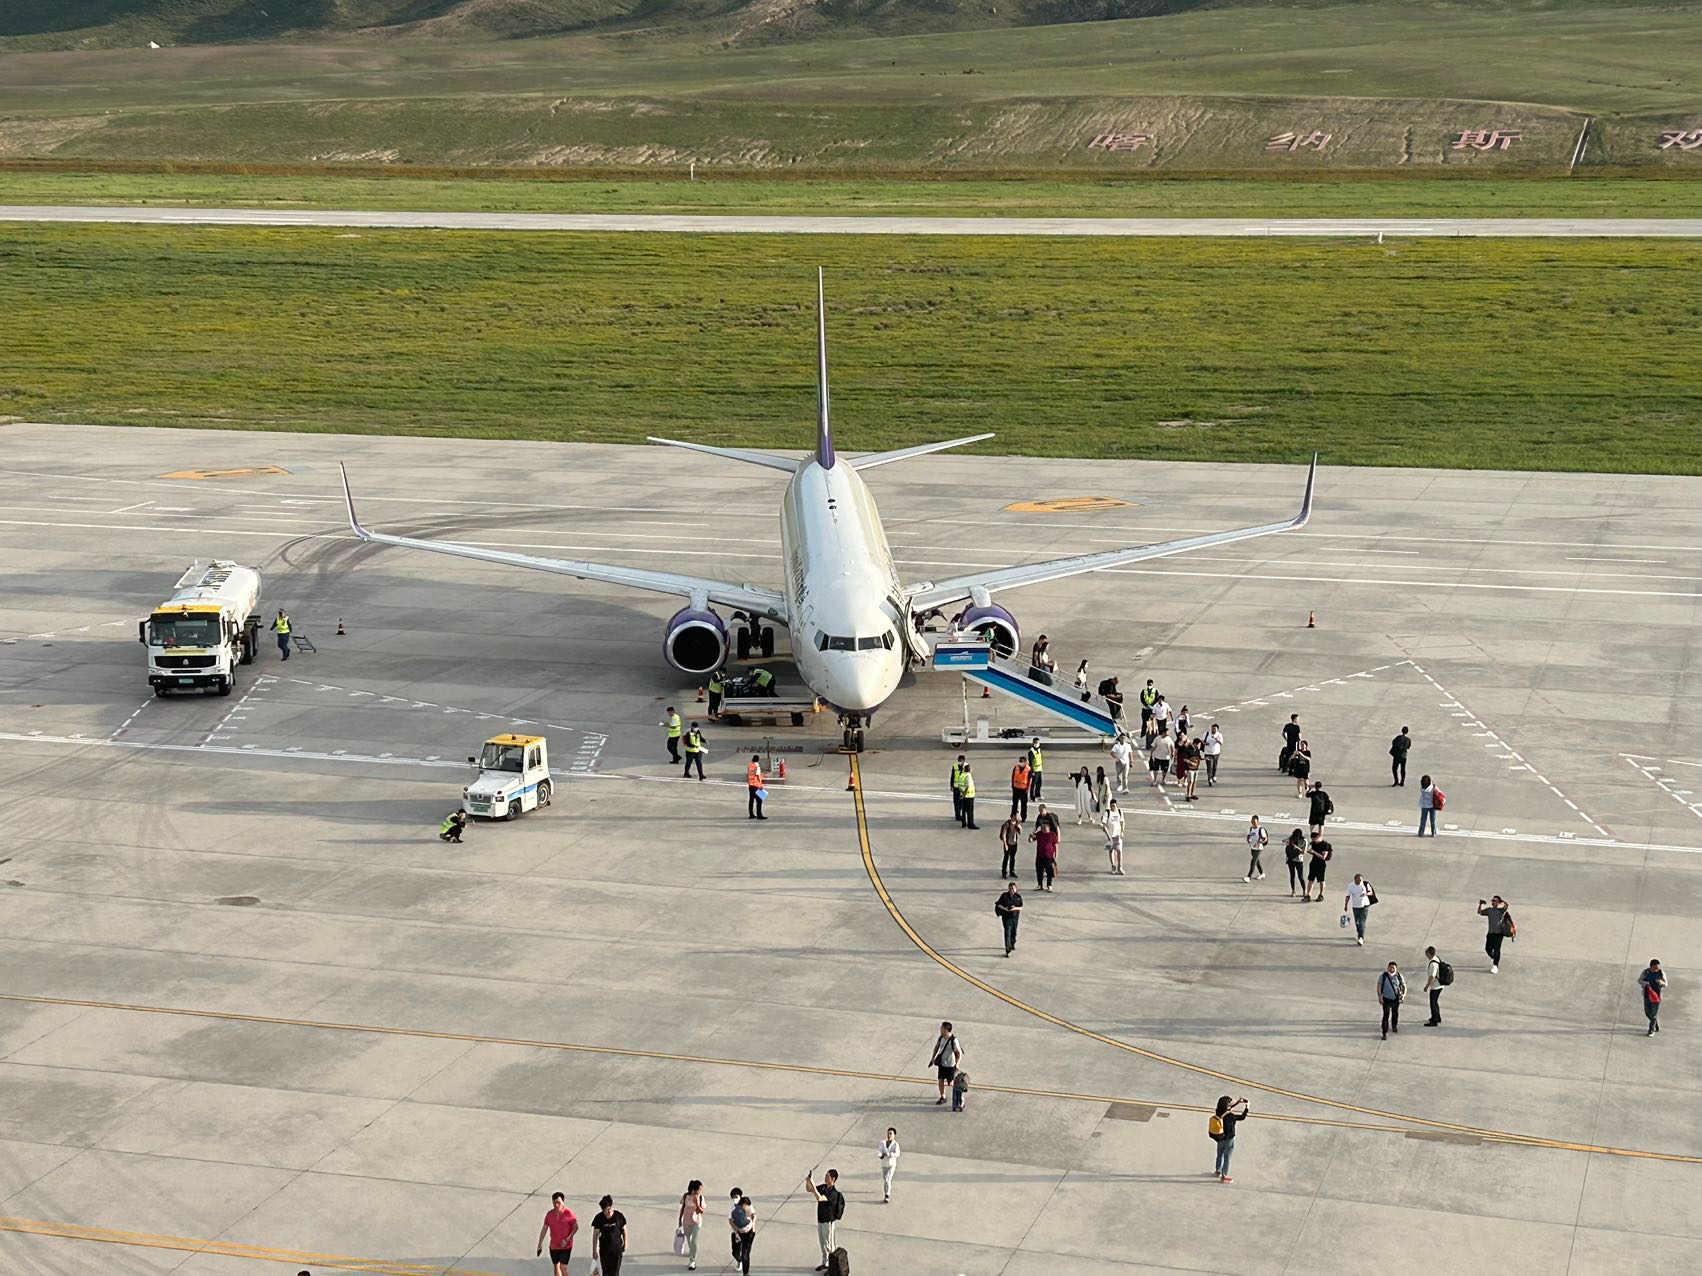 乌鲁木齐航空公司助力喀纳斯夏季旅游热潮 开通“乌鲁木齐-伊宁-喀什”串飞航线